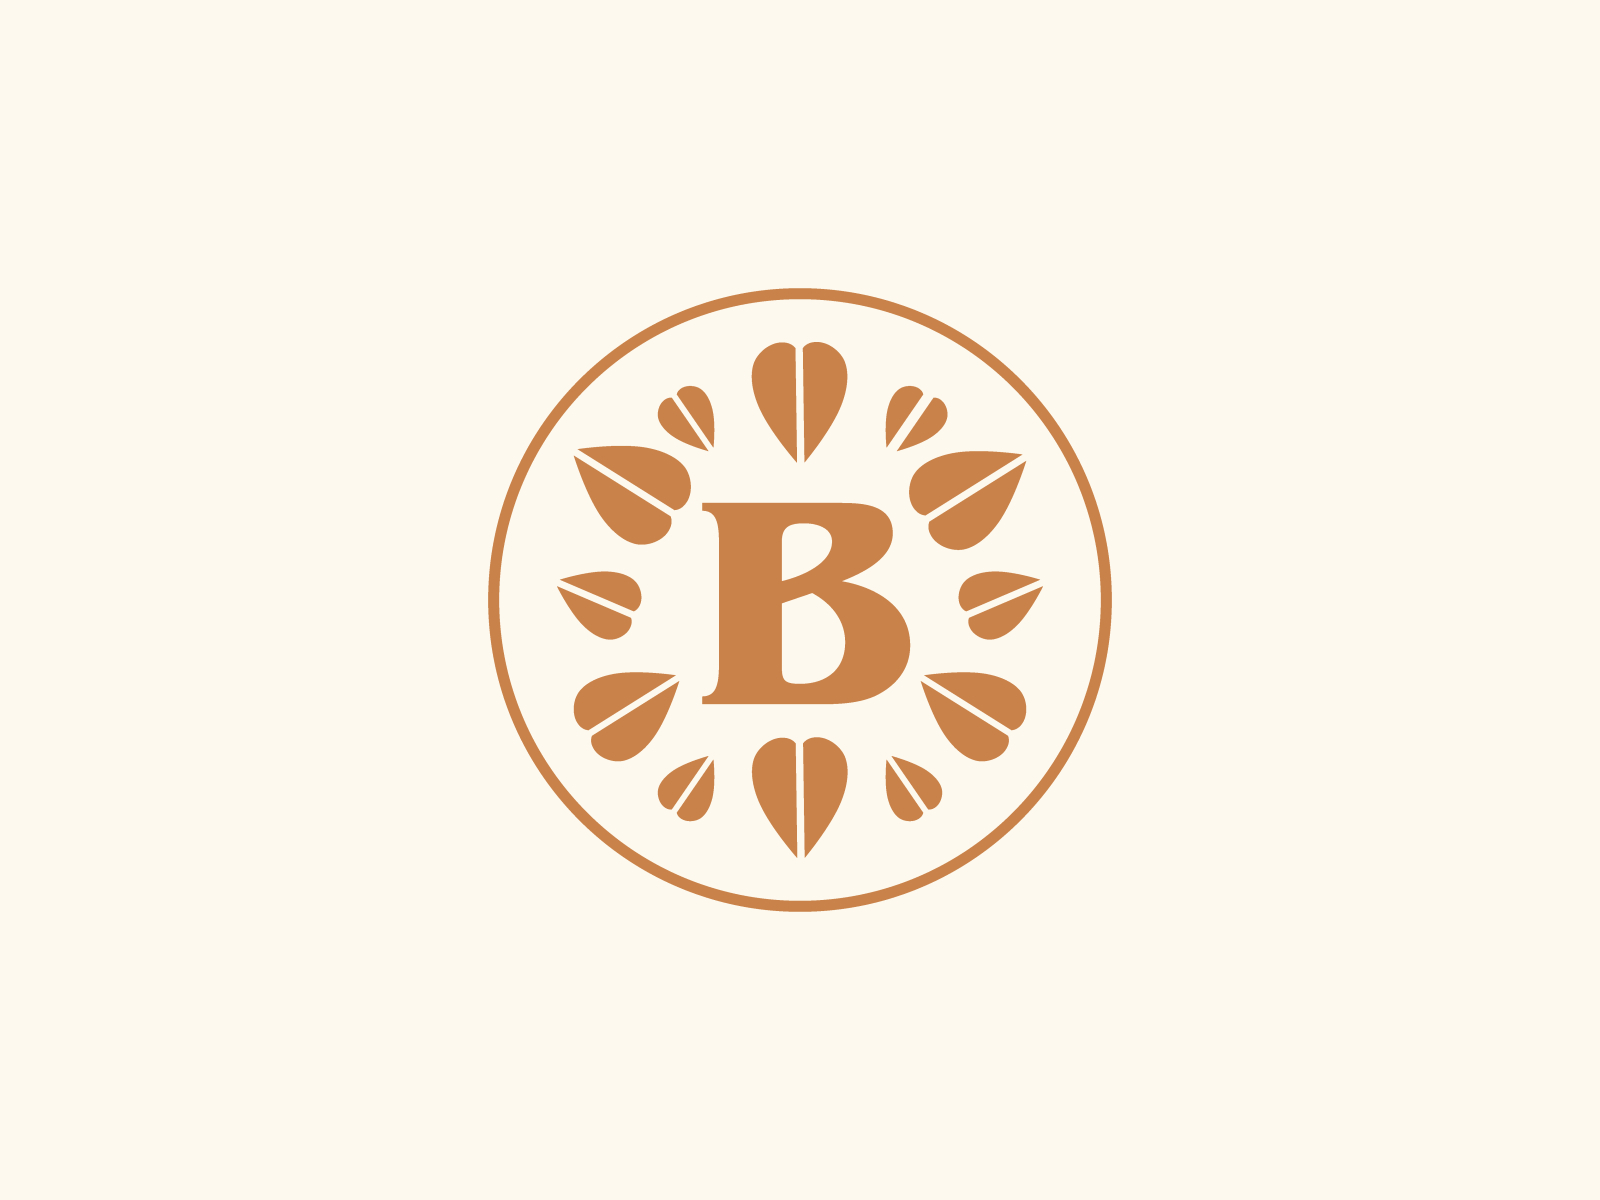 Birkett Mills Secondary Logo by Rachel Blace Cannon on Dribbble